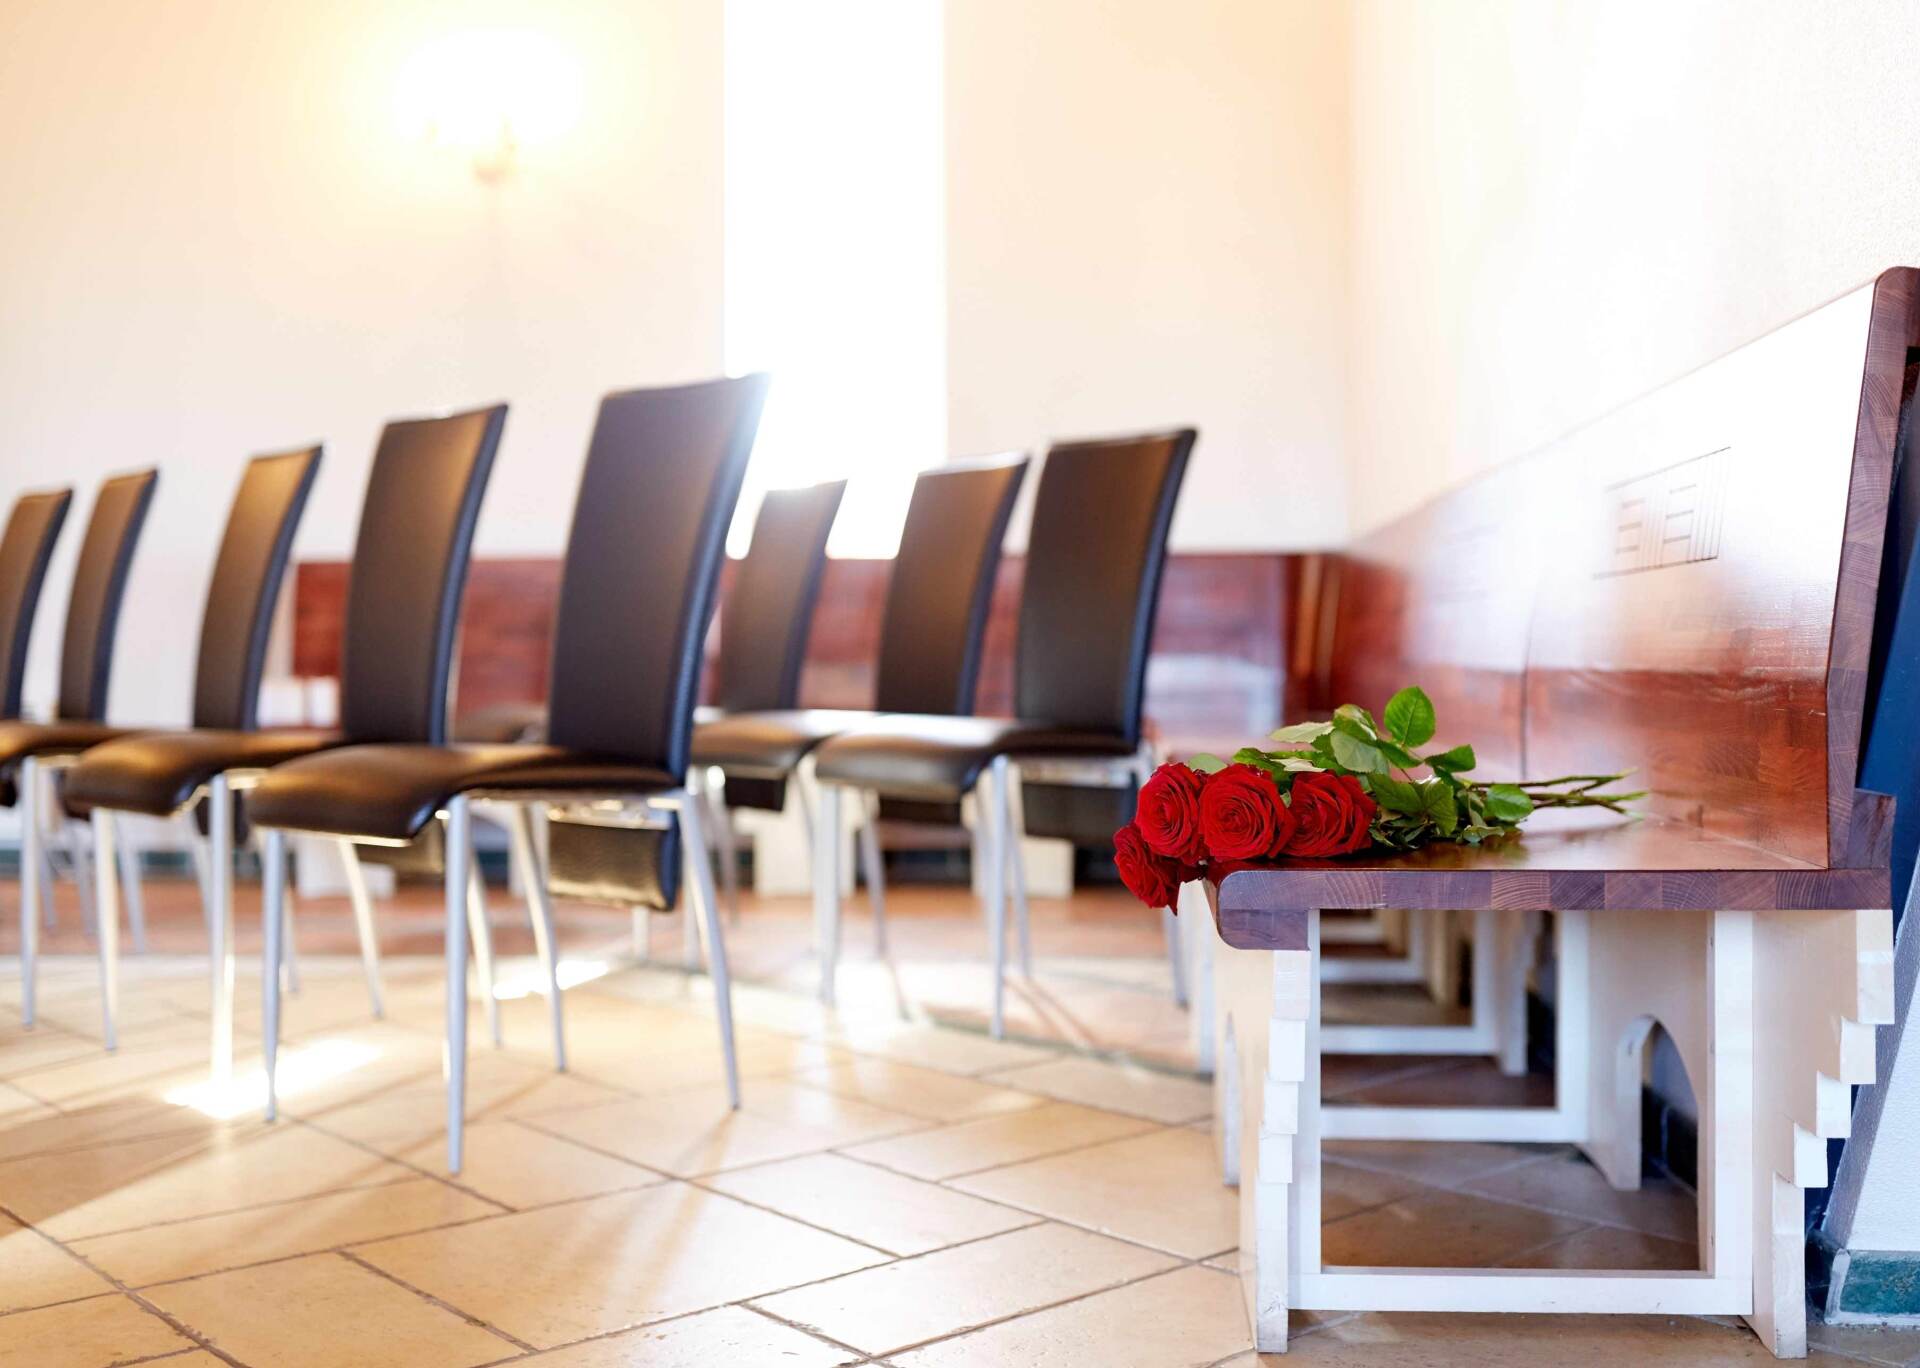 Salle de cérémonie avec chaises et roses rouges